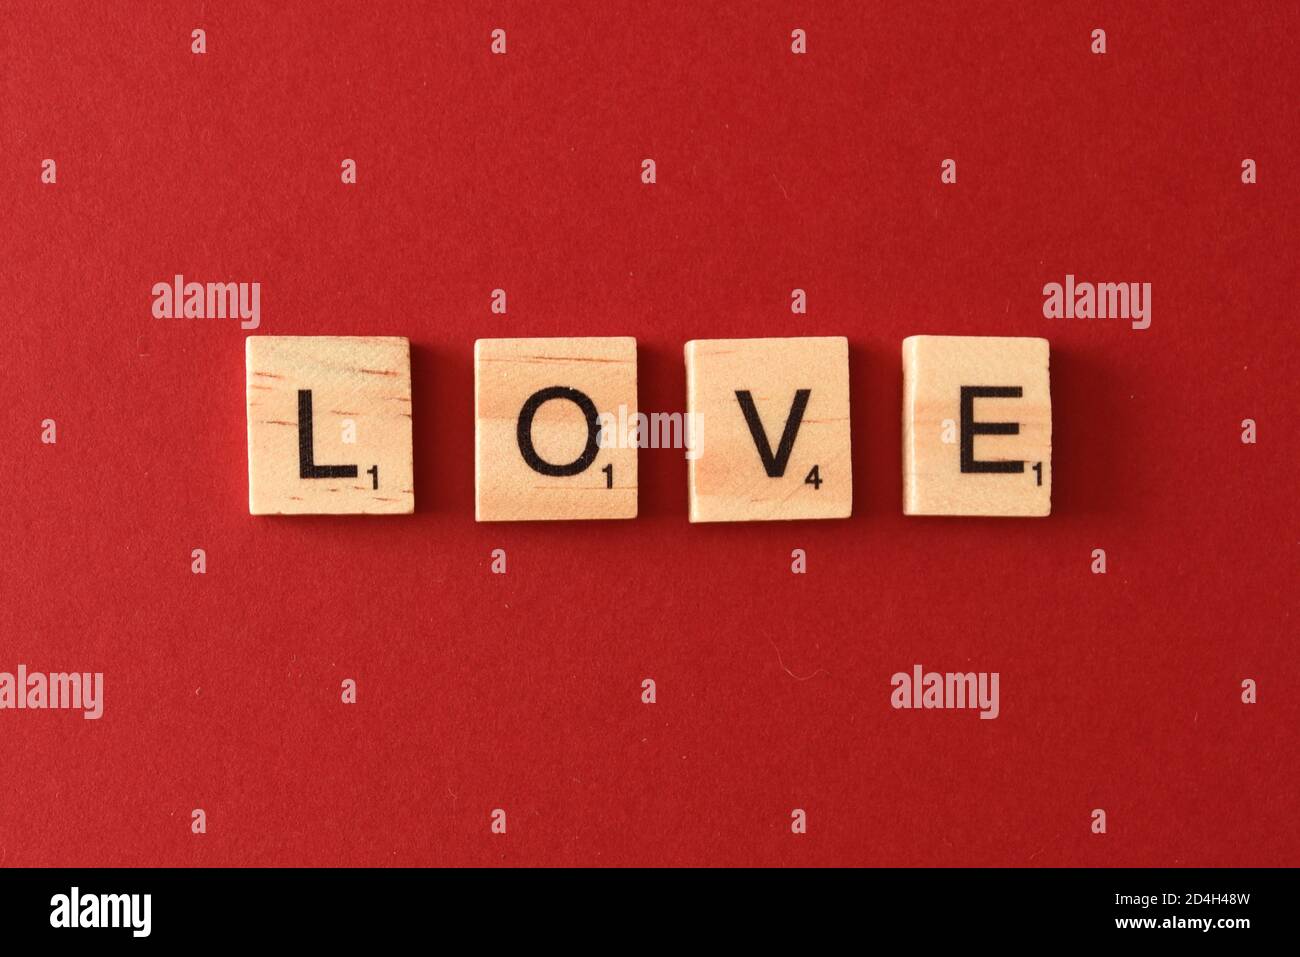 Love Spelt using scrabble style tiles Stock Photo